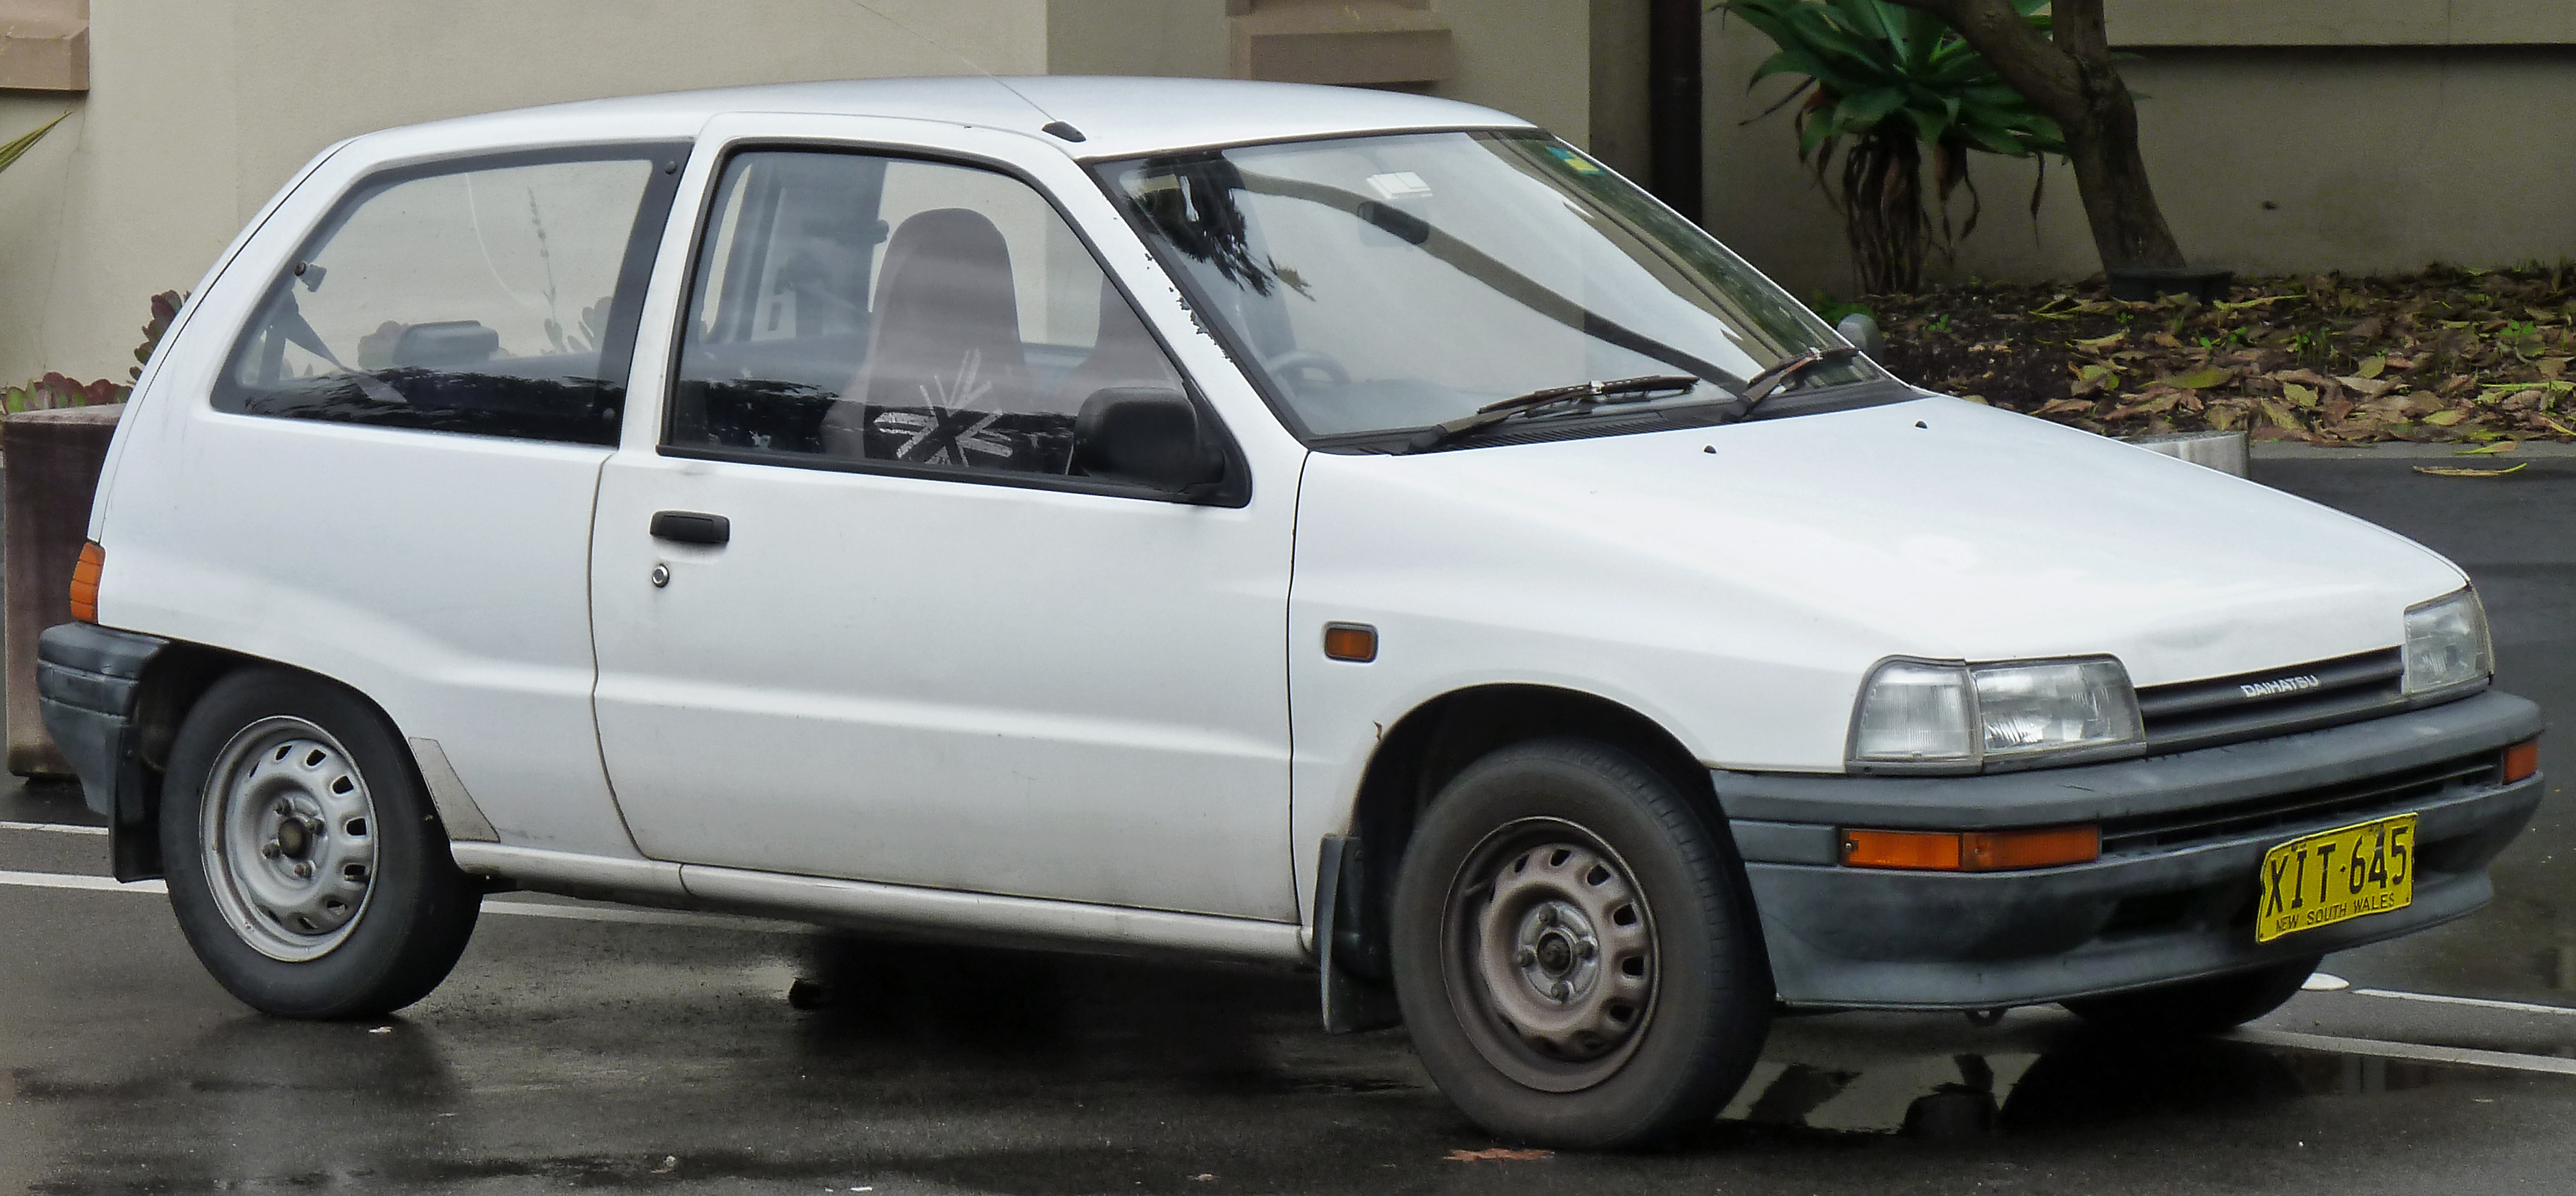 Daihatsu Charade Exterior Front Side View